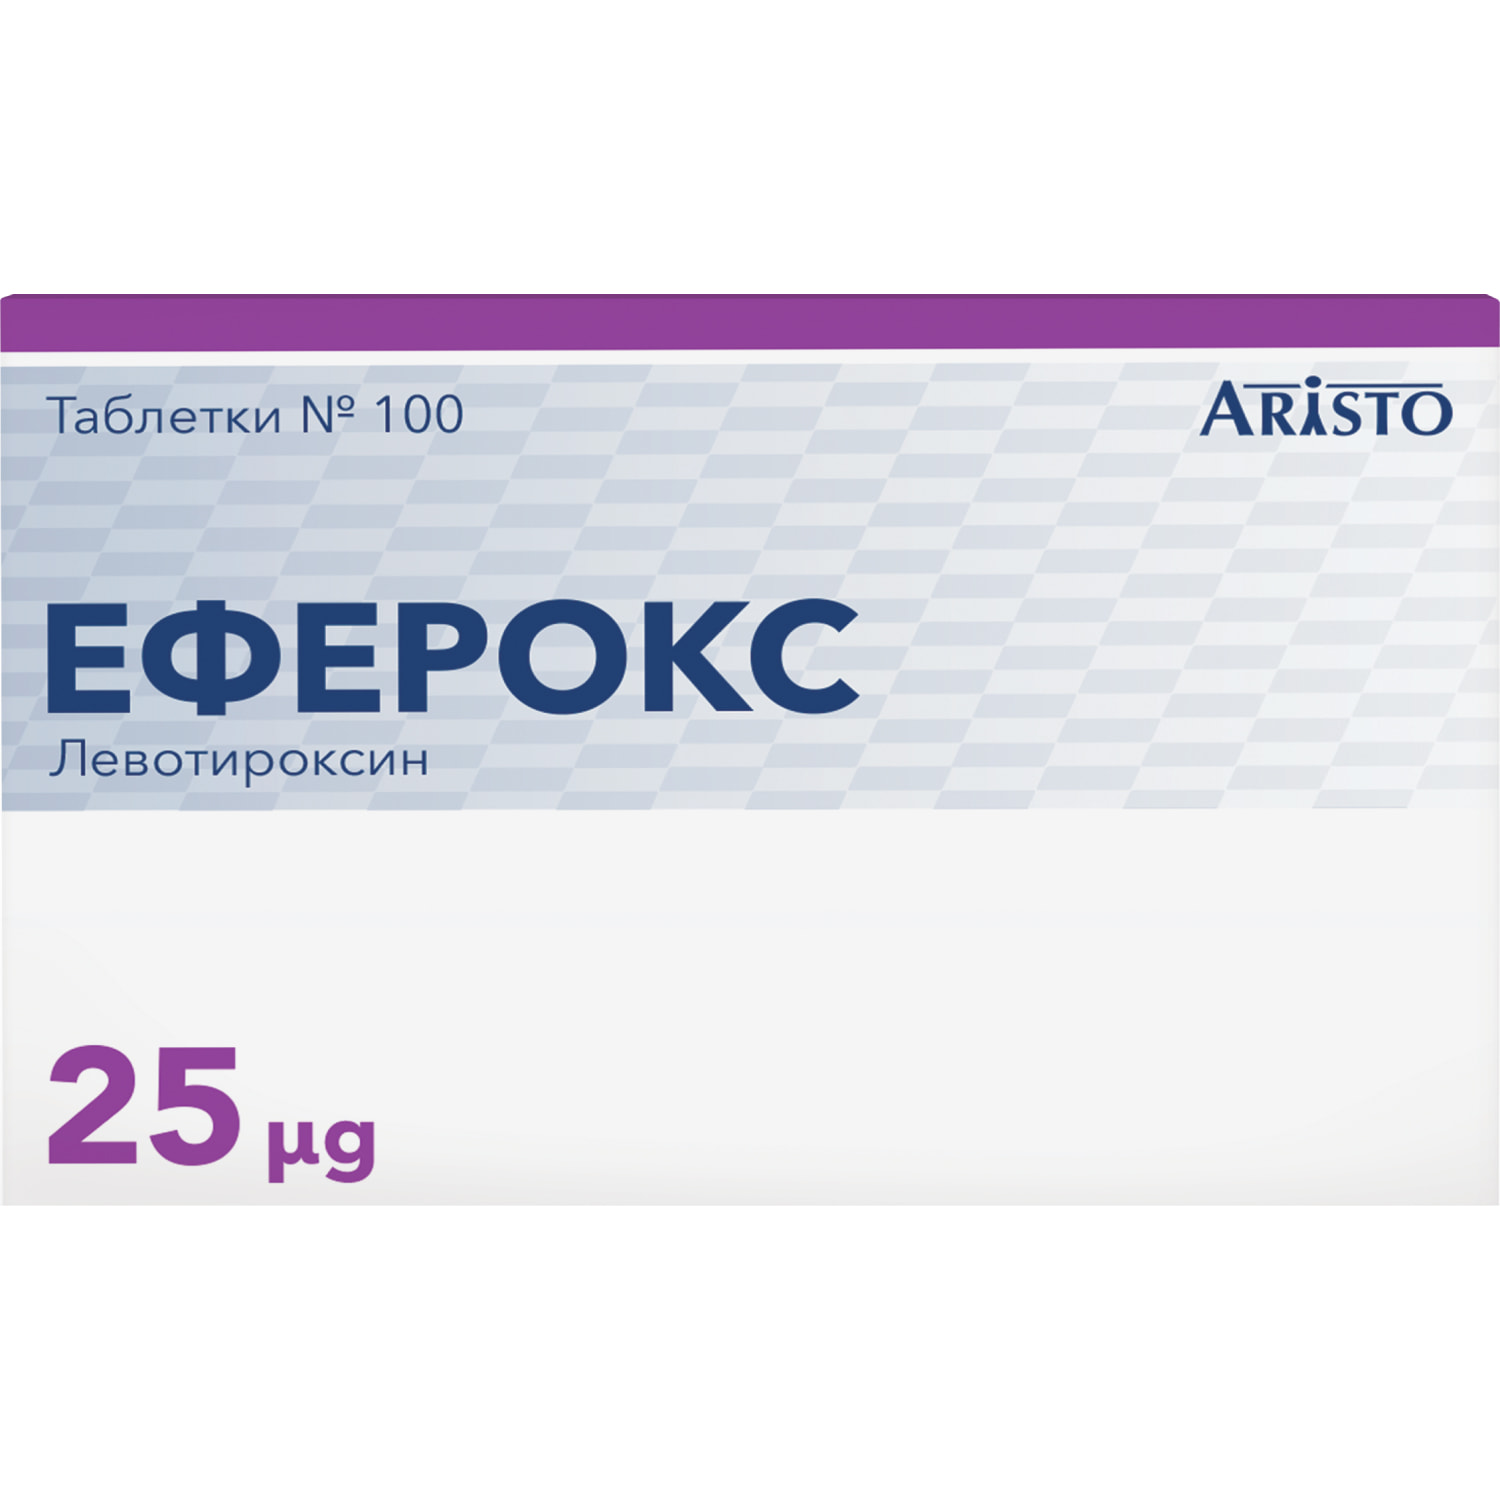 Эферокс таблетки по 25 мкг 4 блистера по 25 шт (4029438230168) Линдофарм  (Германия) - инструкция, купить по низкой цене в Украине | Аналоги, отзывы  - МИС Аптека 9-1-1